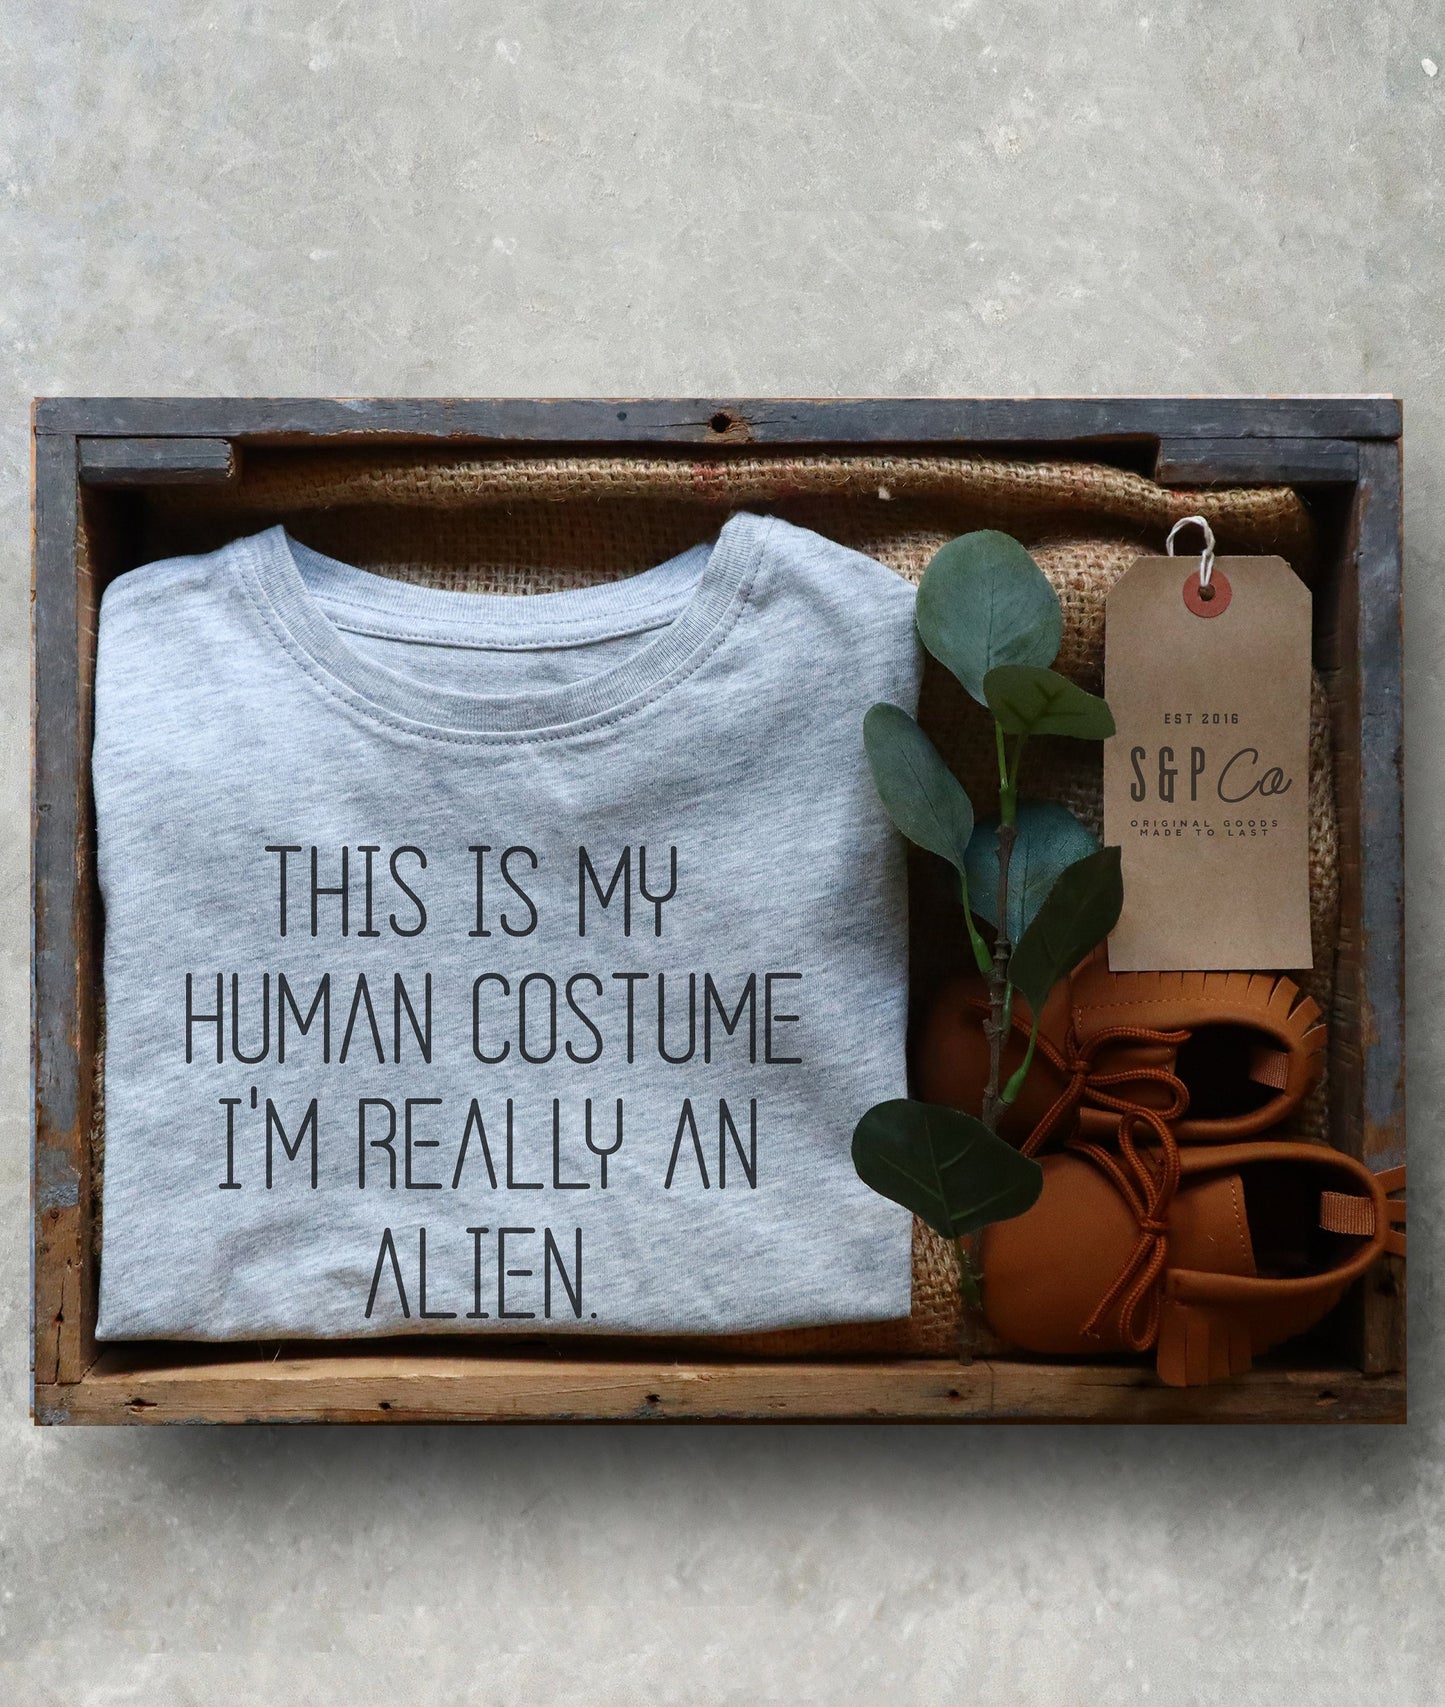 I'm Really An Alien Kids T-Shirt - Halloween Shirt, This Is My Human Costume, Toddler Shirt, Alien TShirt, Halloween Costume, Space Shirt